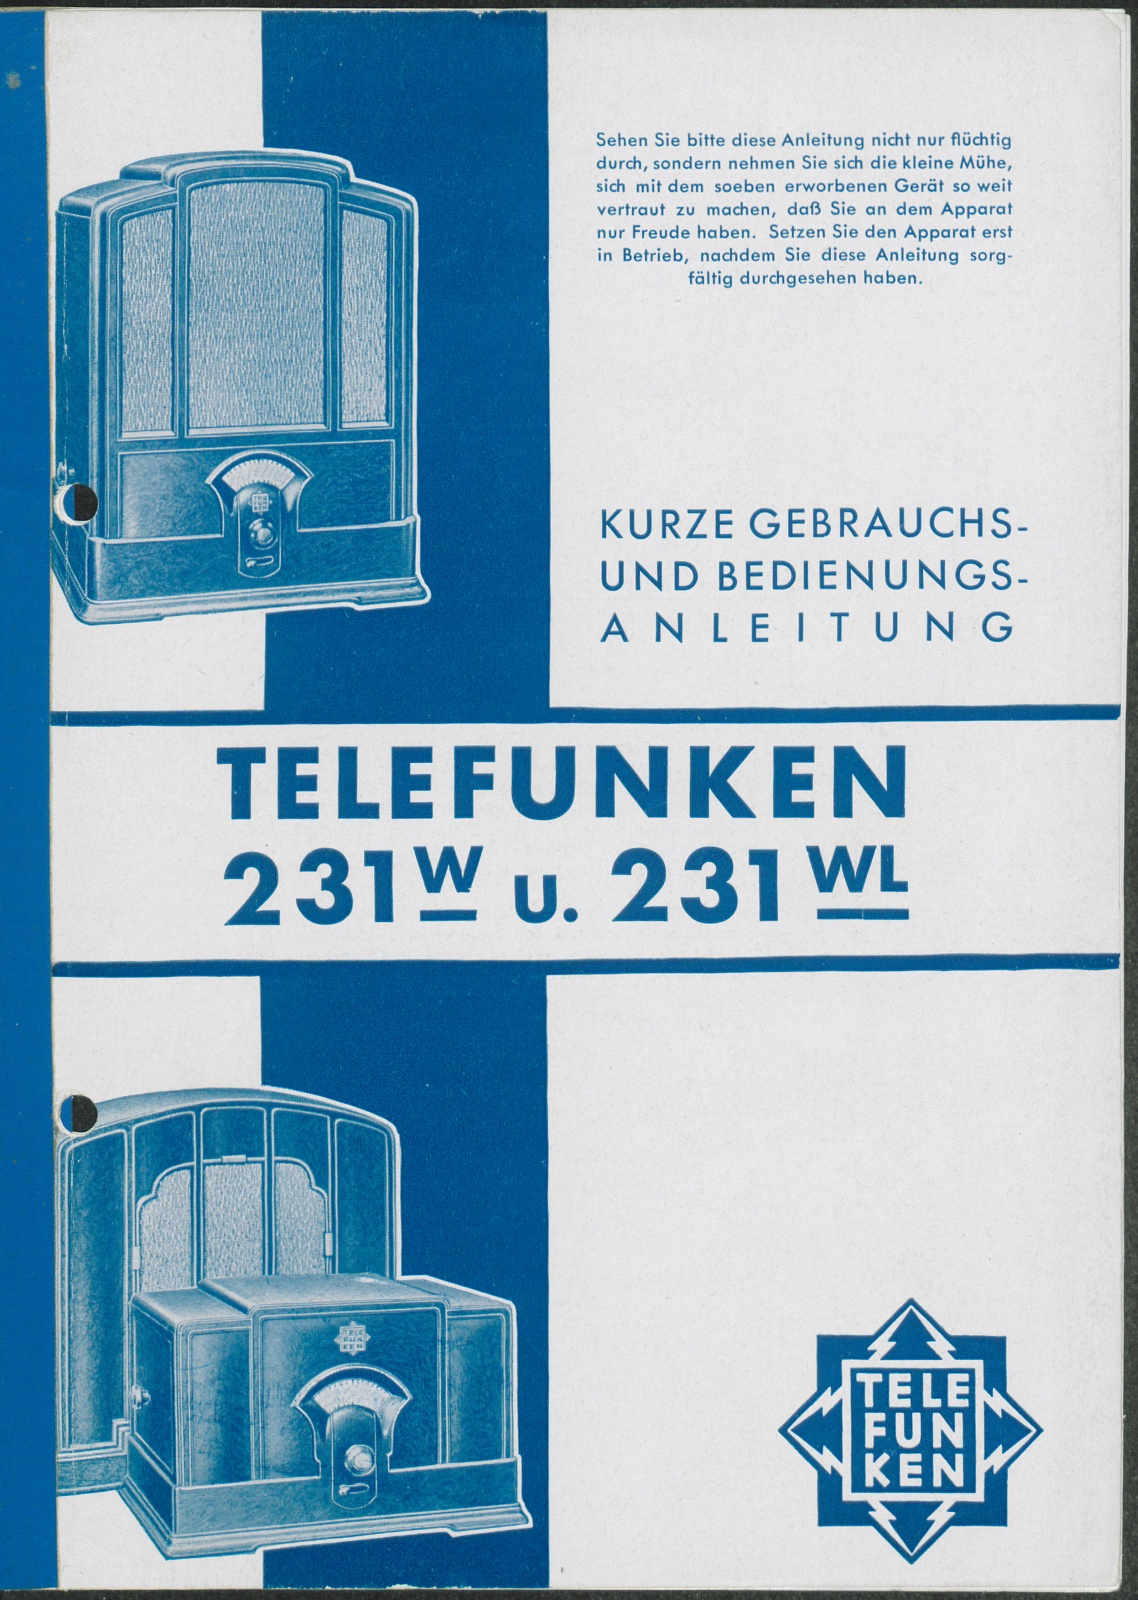 Bedienungsanleitung: Kurze Gebrauchs- und Bedienungsanleitung Telefunken 231 W u. 231 WL (Stiftung Deutsches Technikmuseum Berlin CC0)